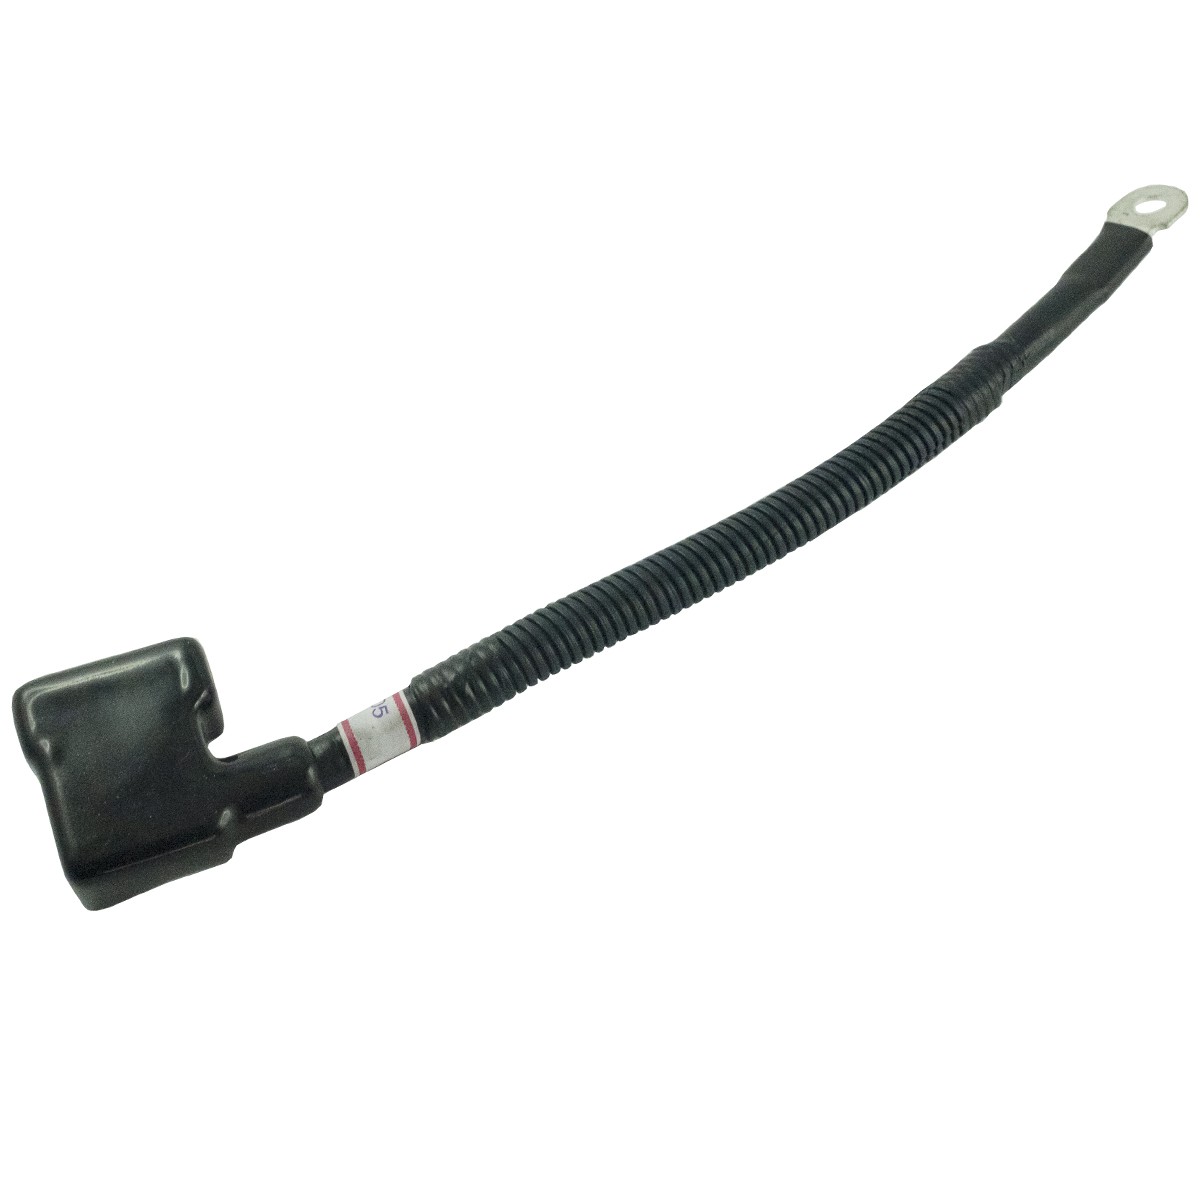 Záporná svorka baterie + kabel VST Shakti 135 - DI ULTRA, P0241102